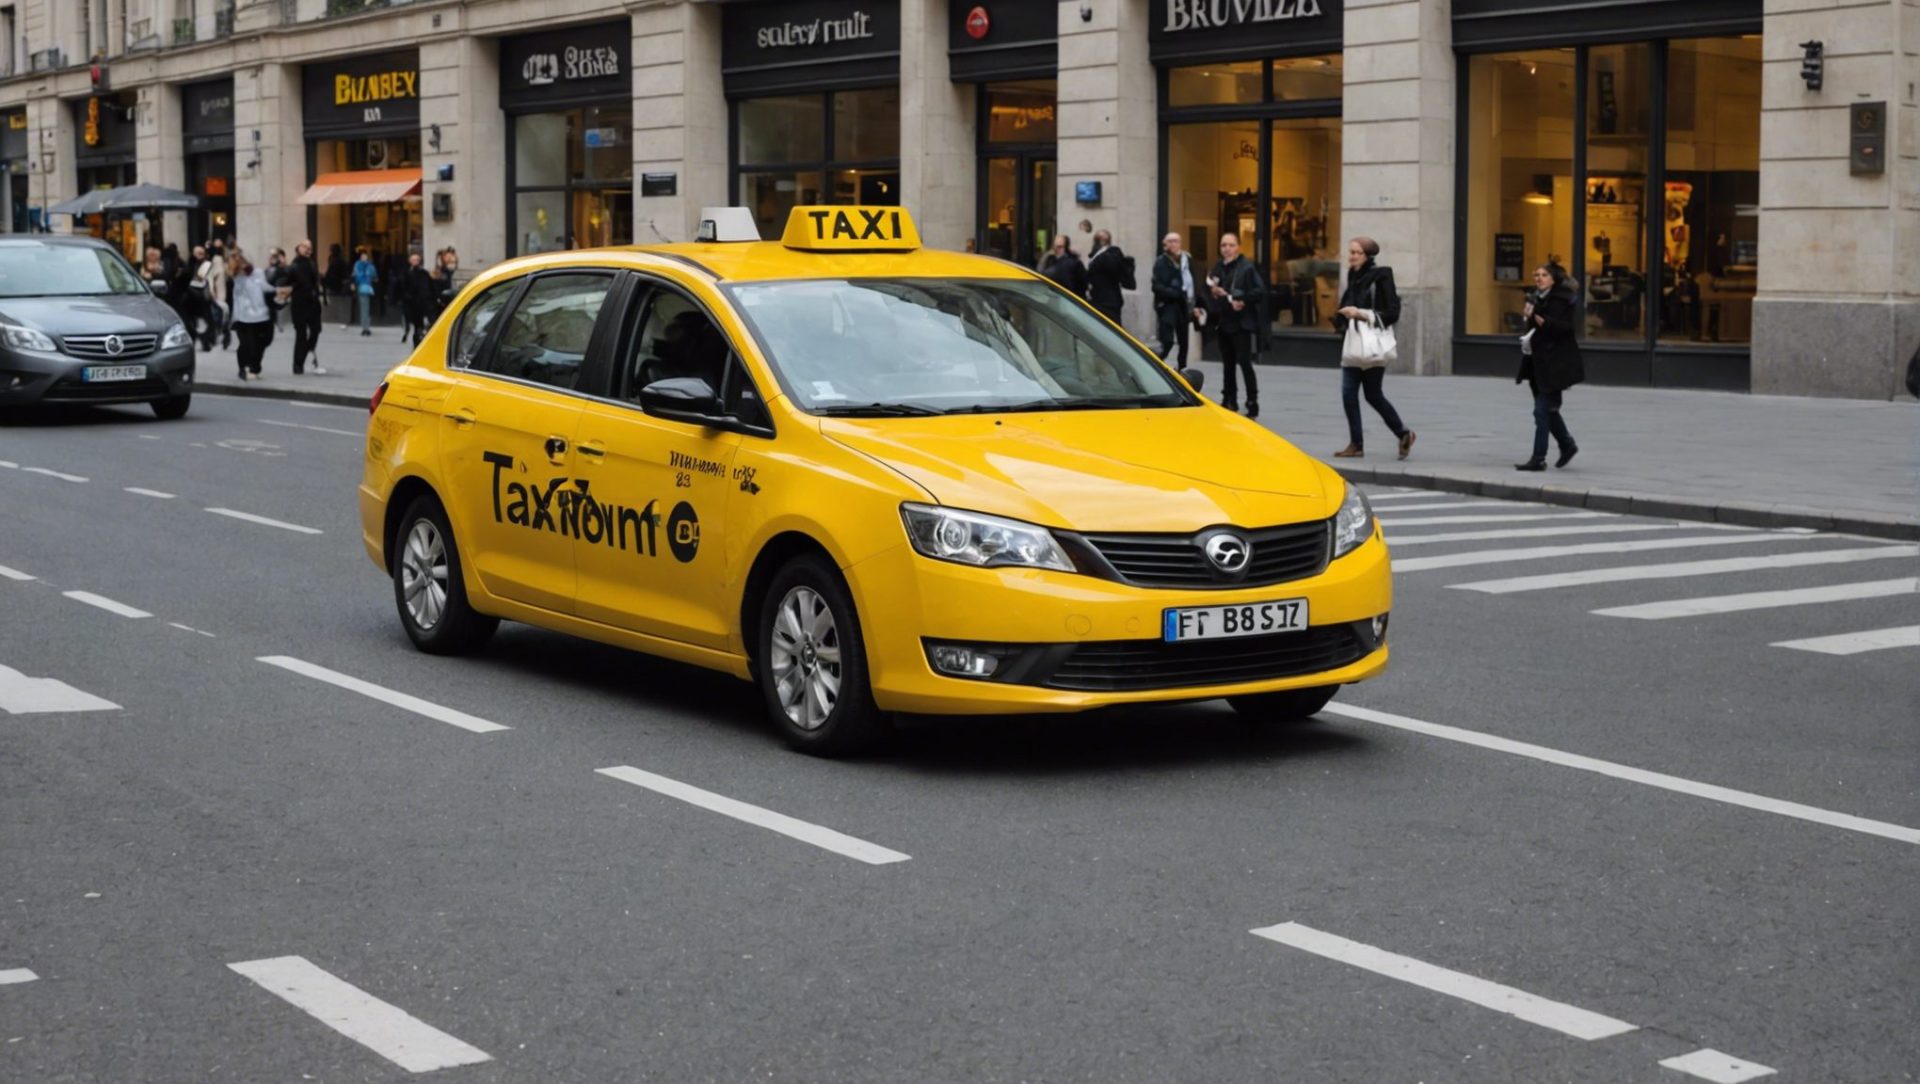 découvrez comment s'informer facilement sur le prix des taxis à bruxelles et planifiez vos déplacements en toute sérénité avec nos conseils pratiques.